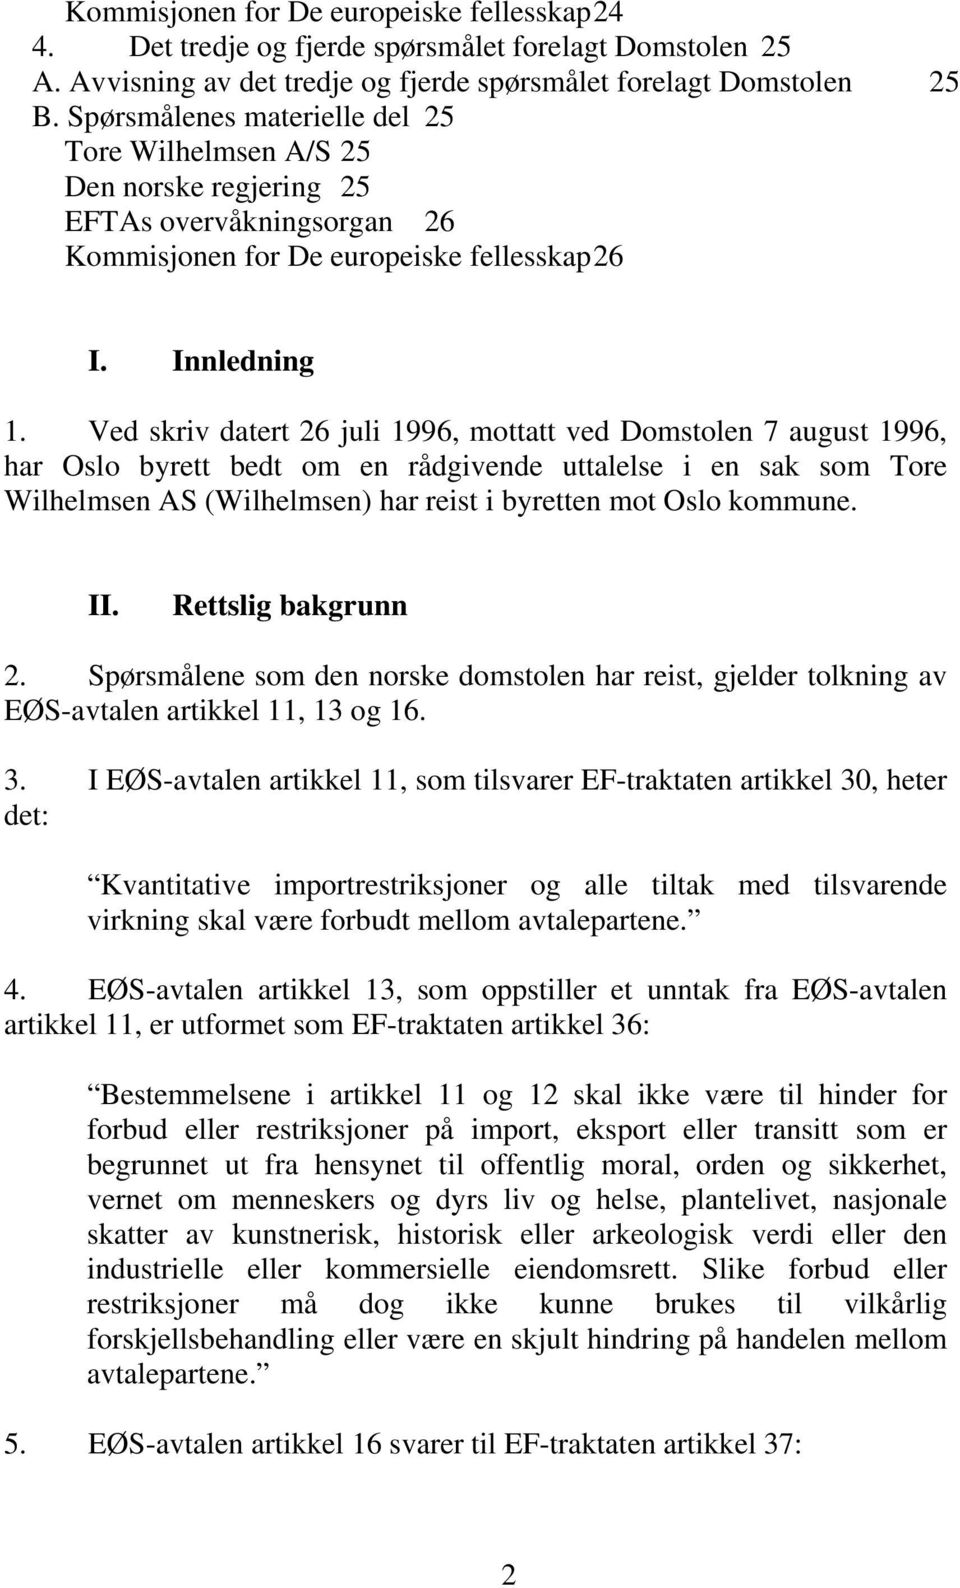 Ved skriv datert 26 juli 1996, mottatt ved Domstolen 7 august 1996, har Oslo byrett bedt om en rådgivende uttalelse i en sak som Tore Wilhelmsen AS (Wilhelmsen) har reist i byretten mot Oslo kommune.